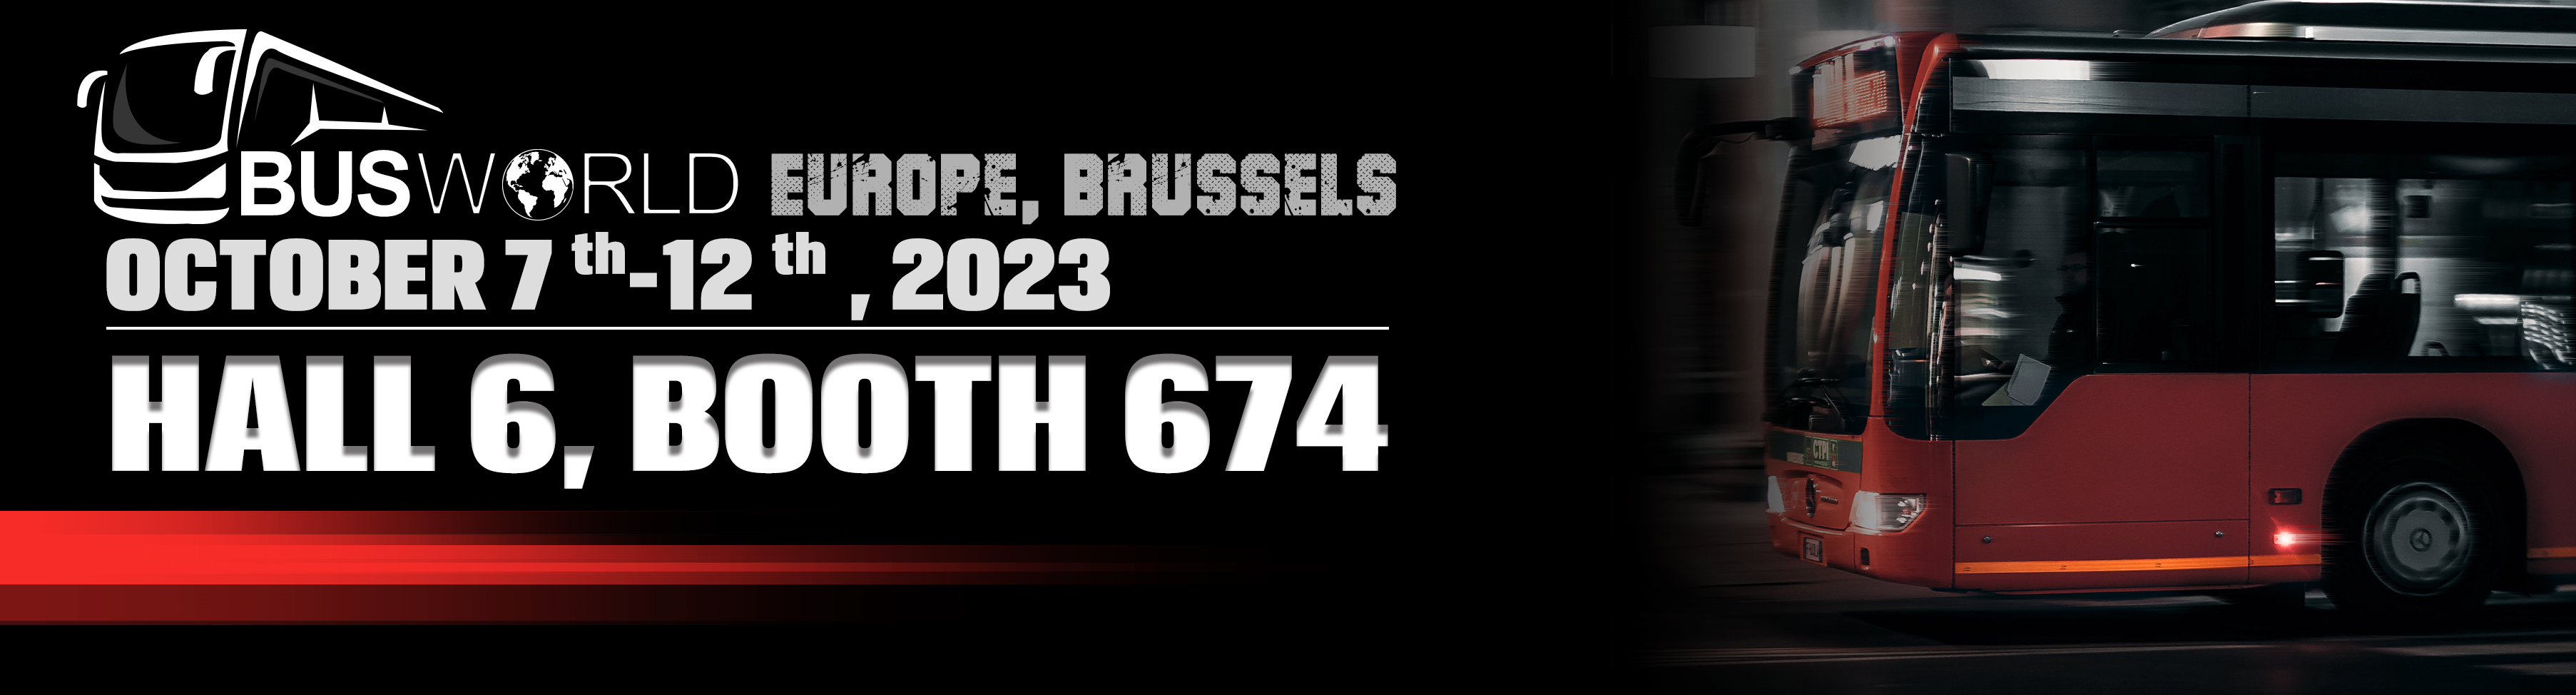 बसवर्ल्ड यूरोप, ब्रुसेल्स 2023